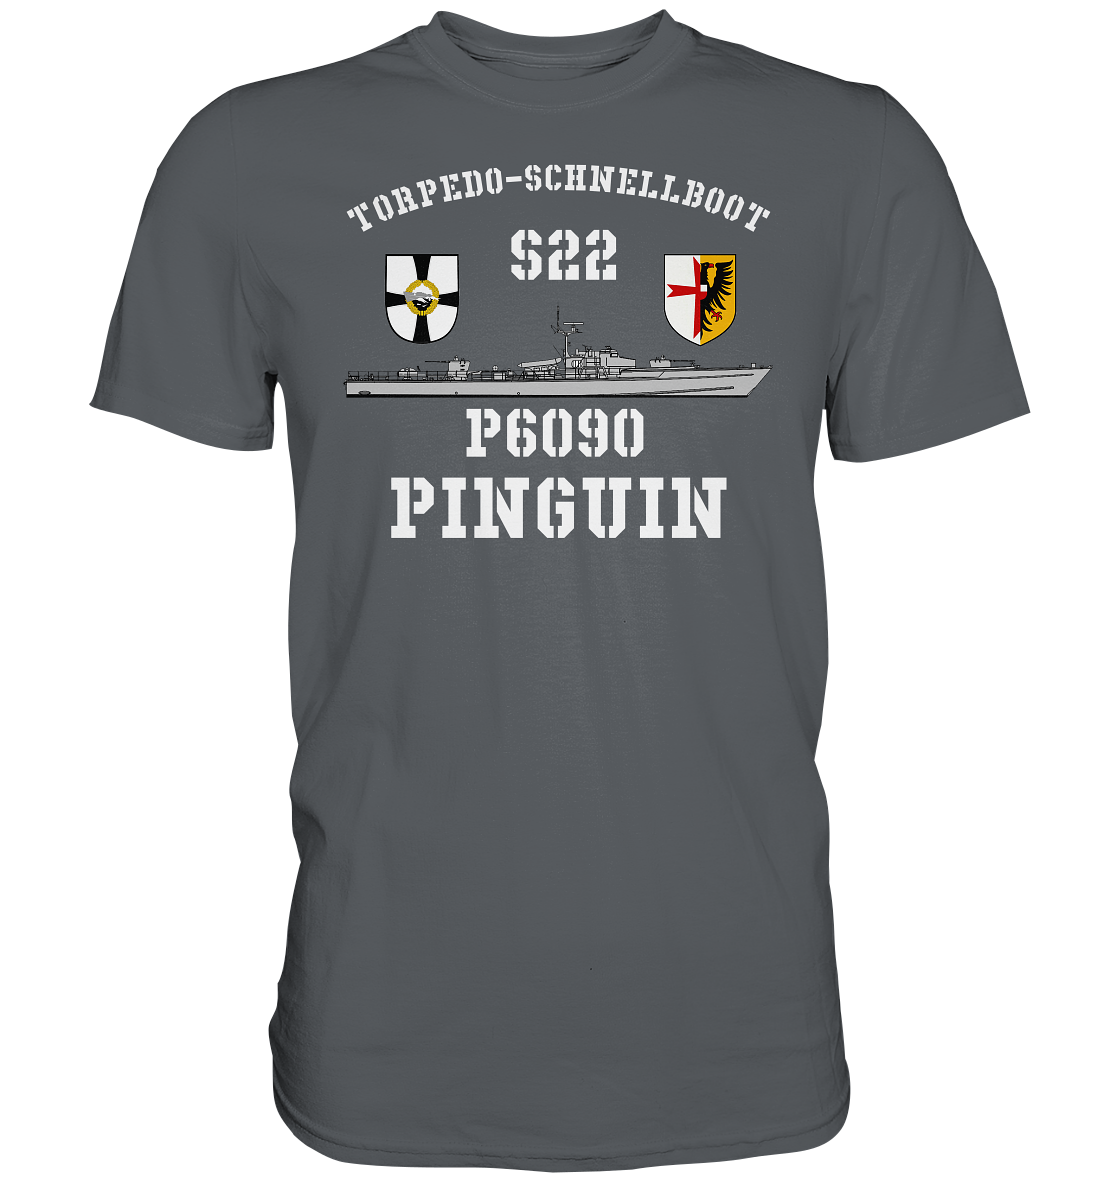 P6090 S22 PINGUIN - Premium Shirt